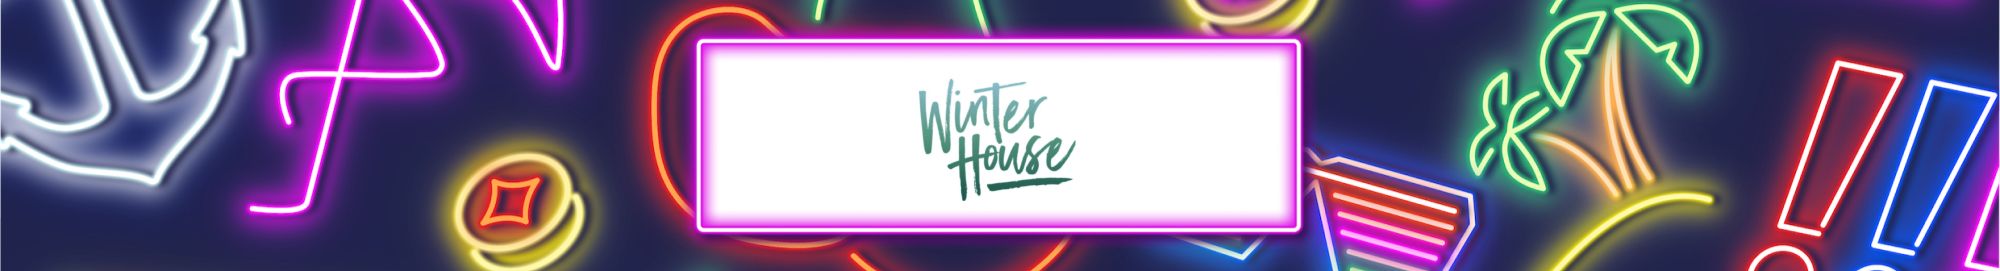 v2 - winter house Desktop.jpg